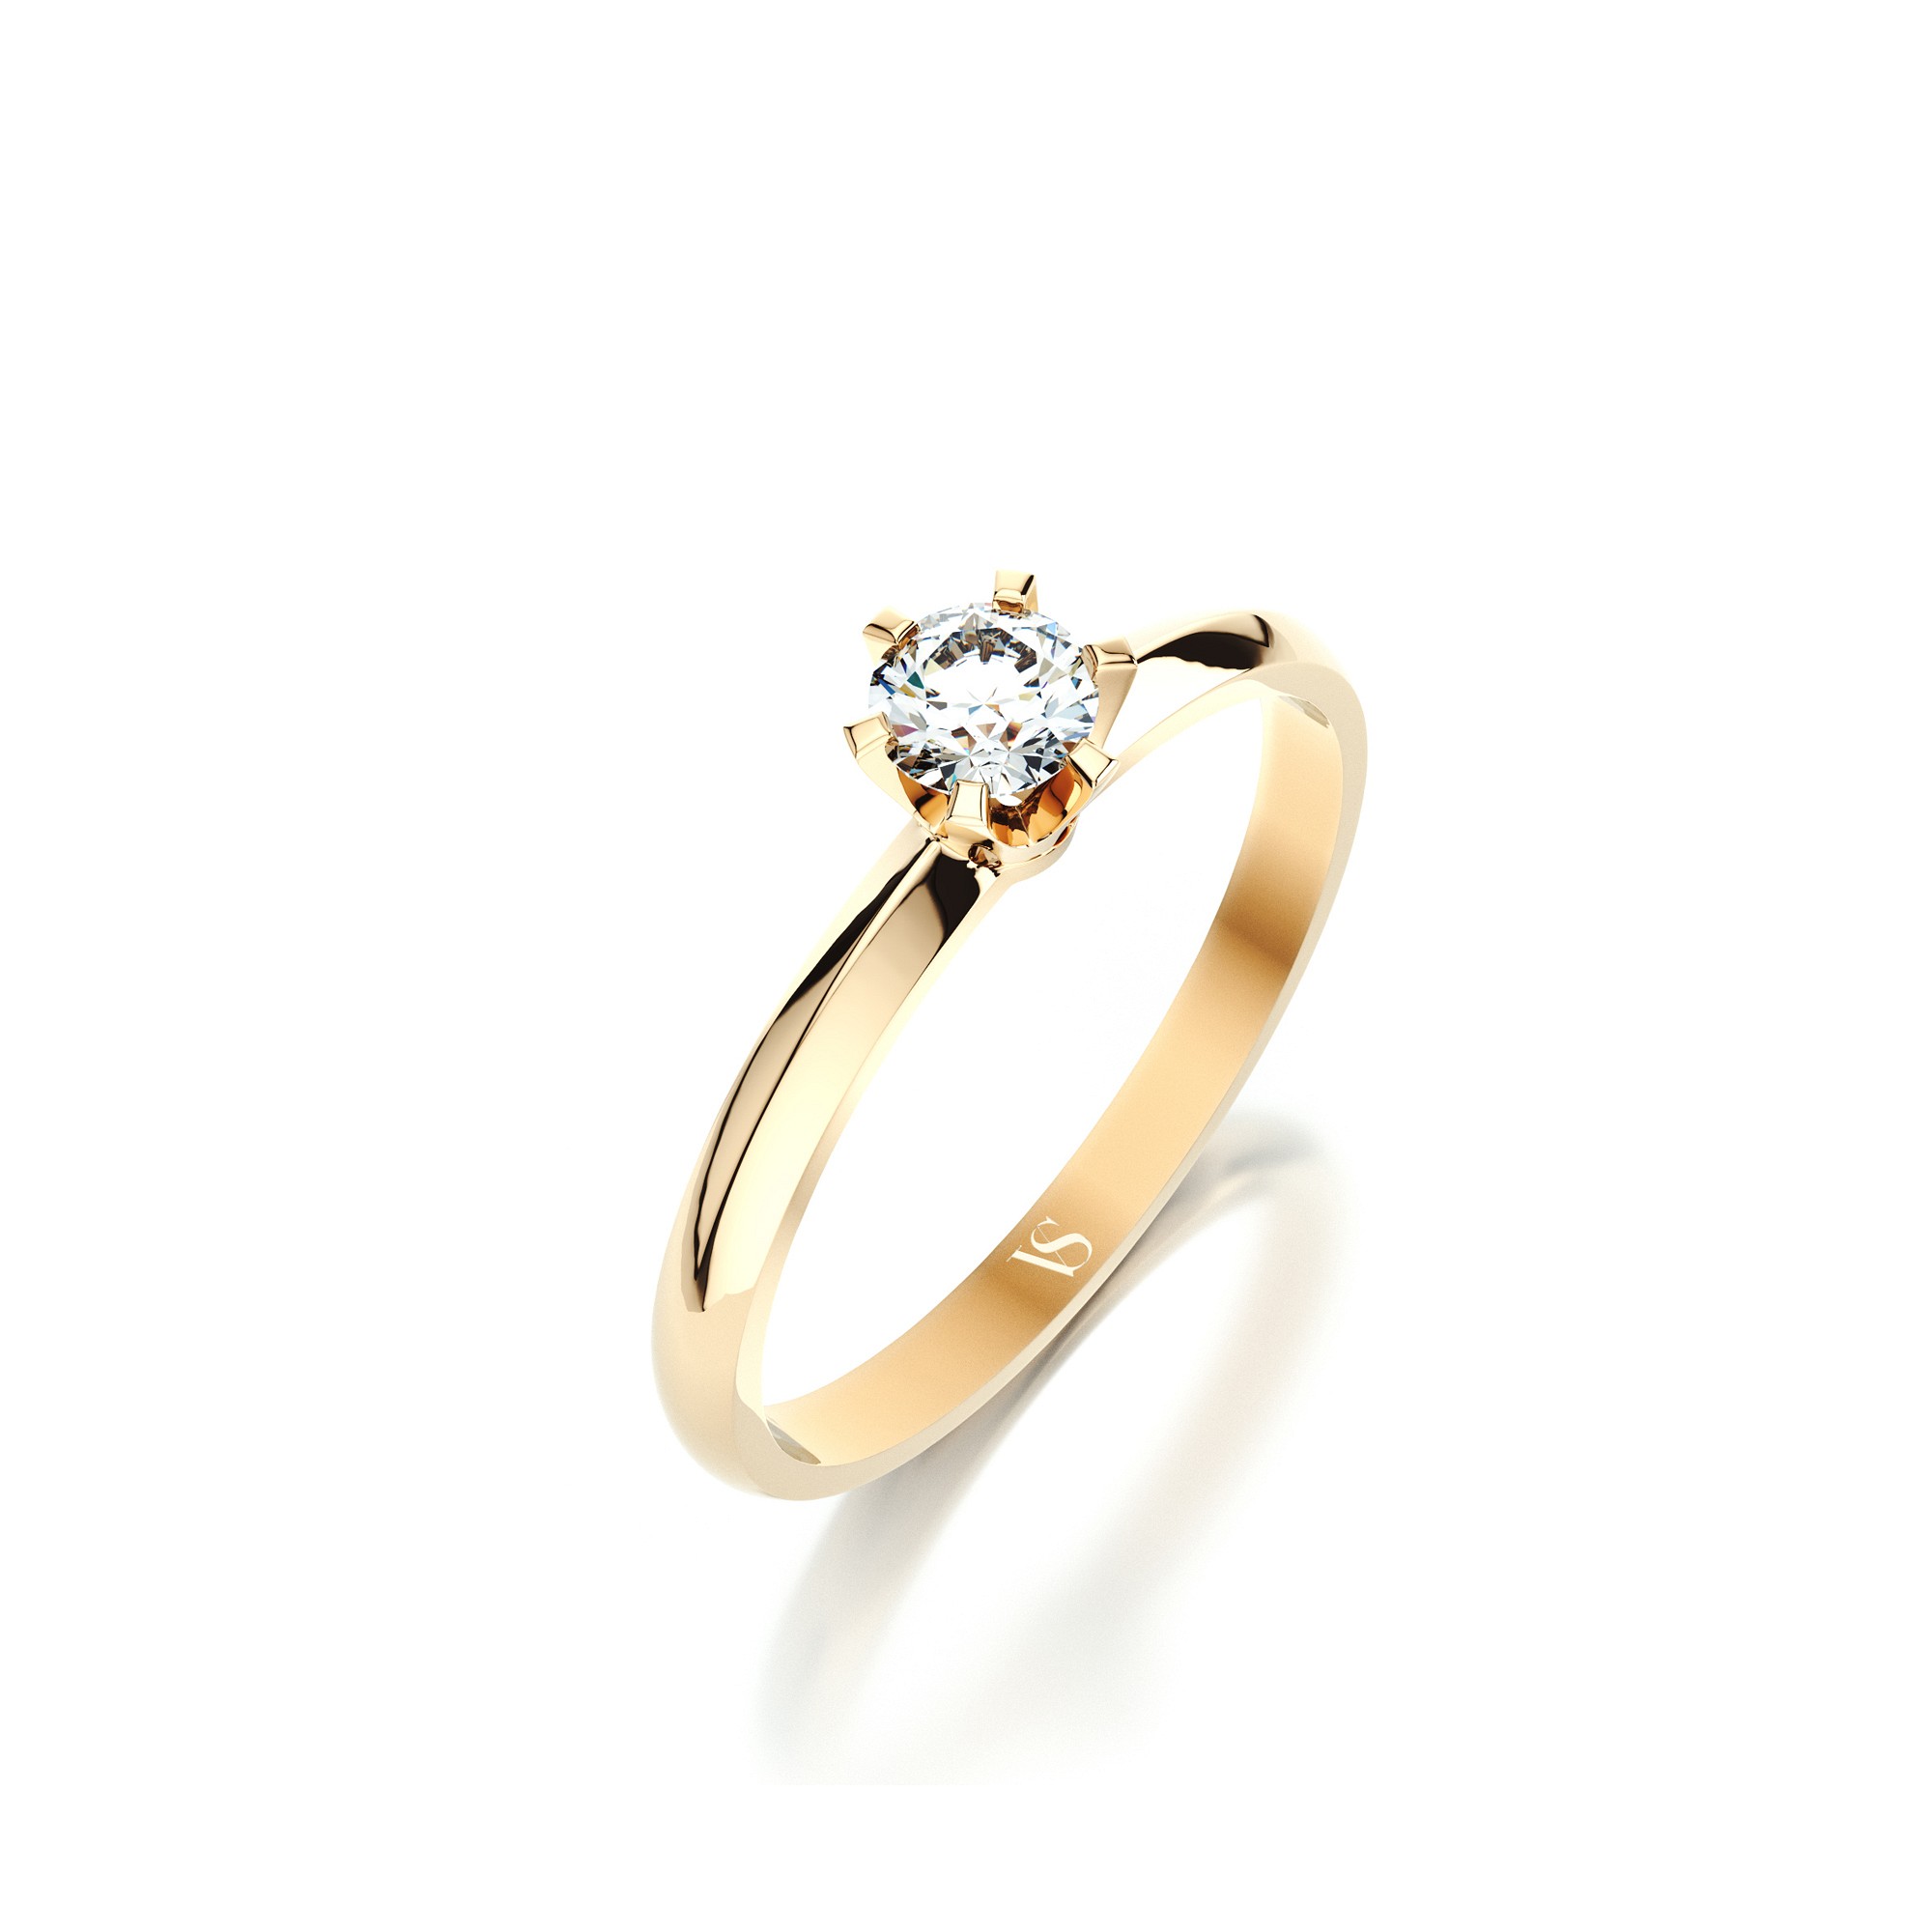 Zásnubní prsten VS087 – žluté zlato